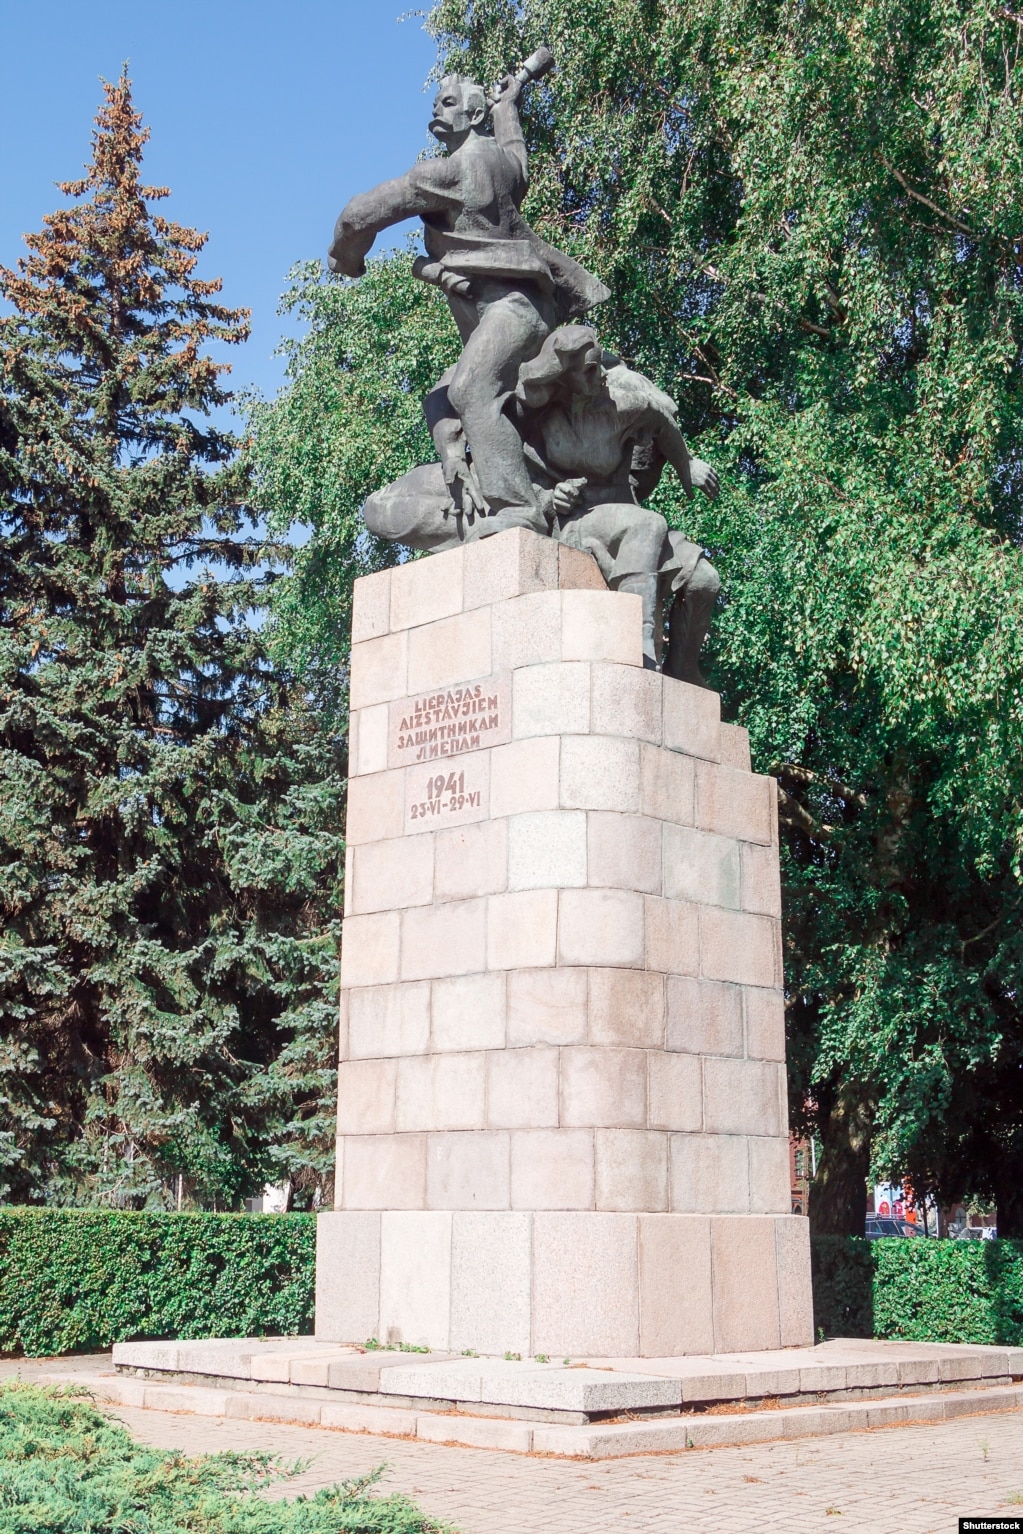 Monumenti i Mbrojtësve të Liepajas në Letoninë perëndimore, fotografuar në shtator 2022. Statuja, e quajtur &quot;hedhësi i granatave&quot;, përshkruan një punëtor që luftonte pushtimin nazist të Letonisë në vitin 1941 së bashku me një marinar dhe ndihmës sovjetik. Monumenti u rrëzua në tetor të vitit 2022.